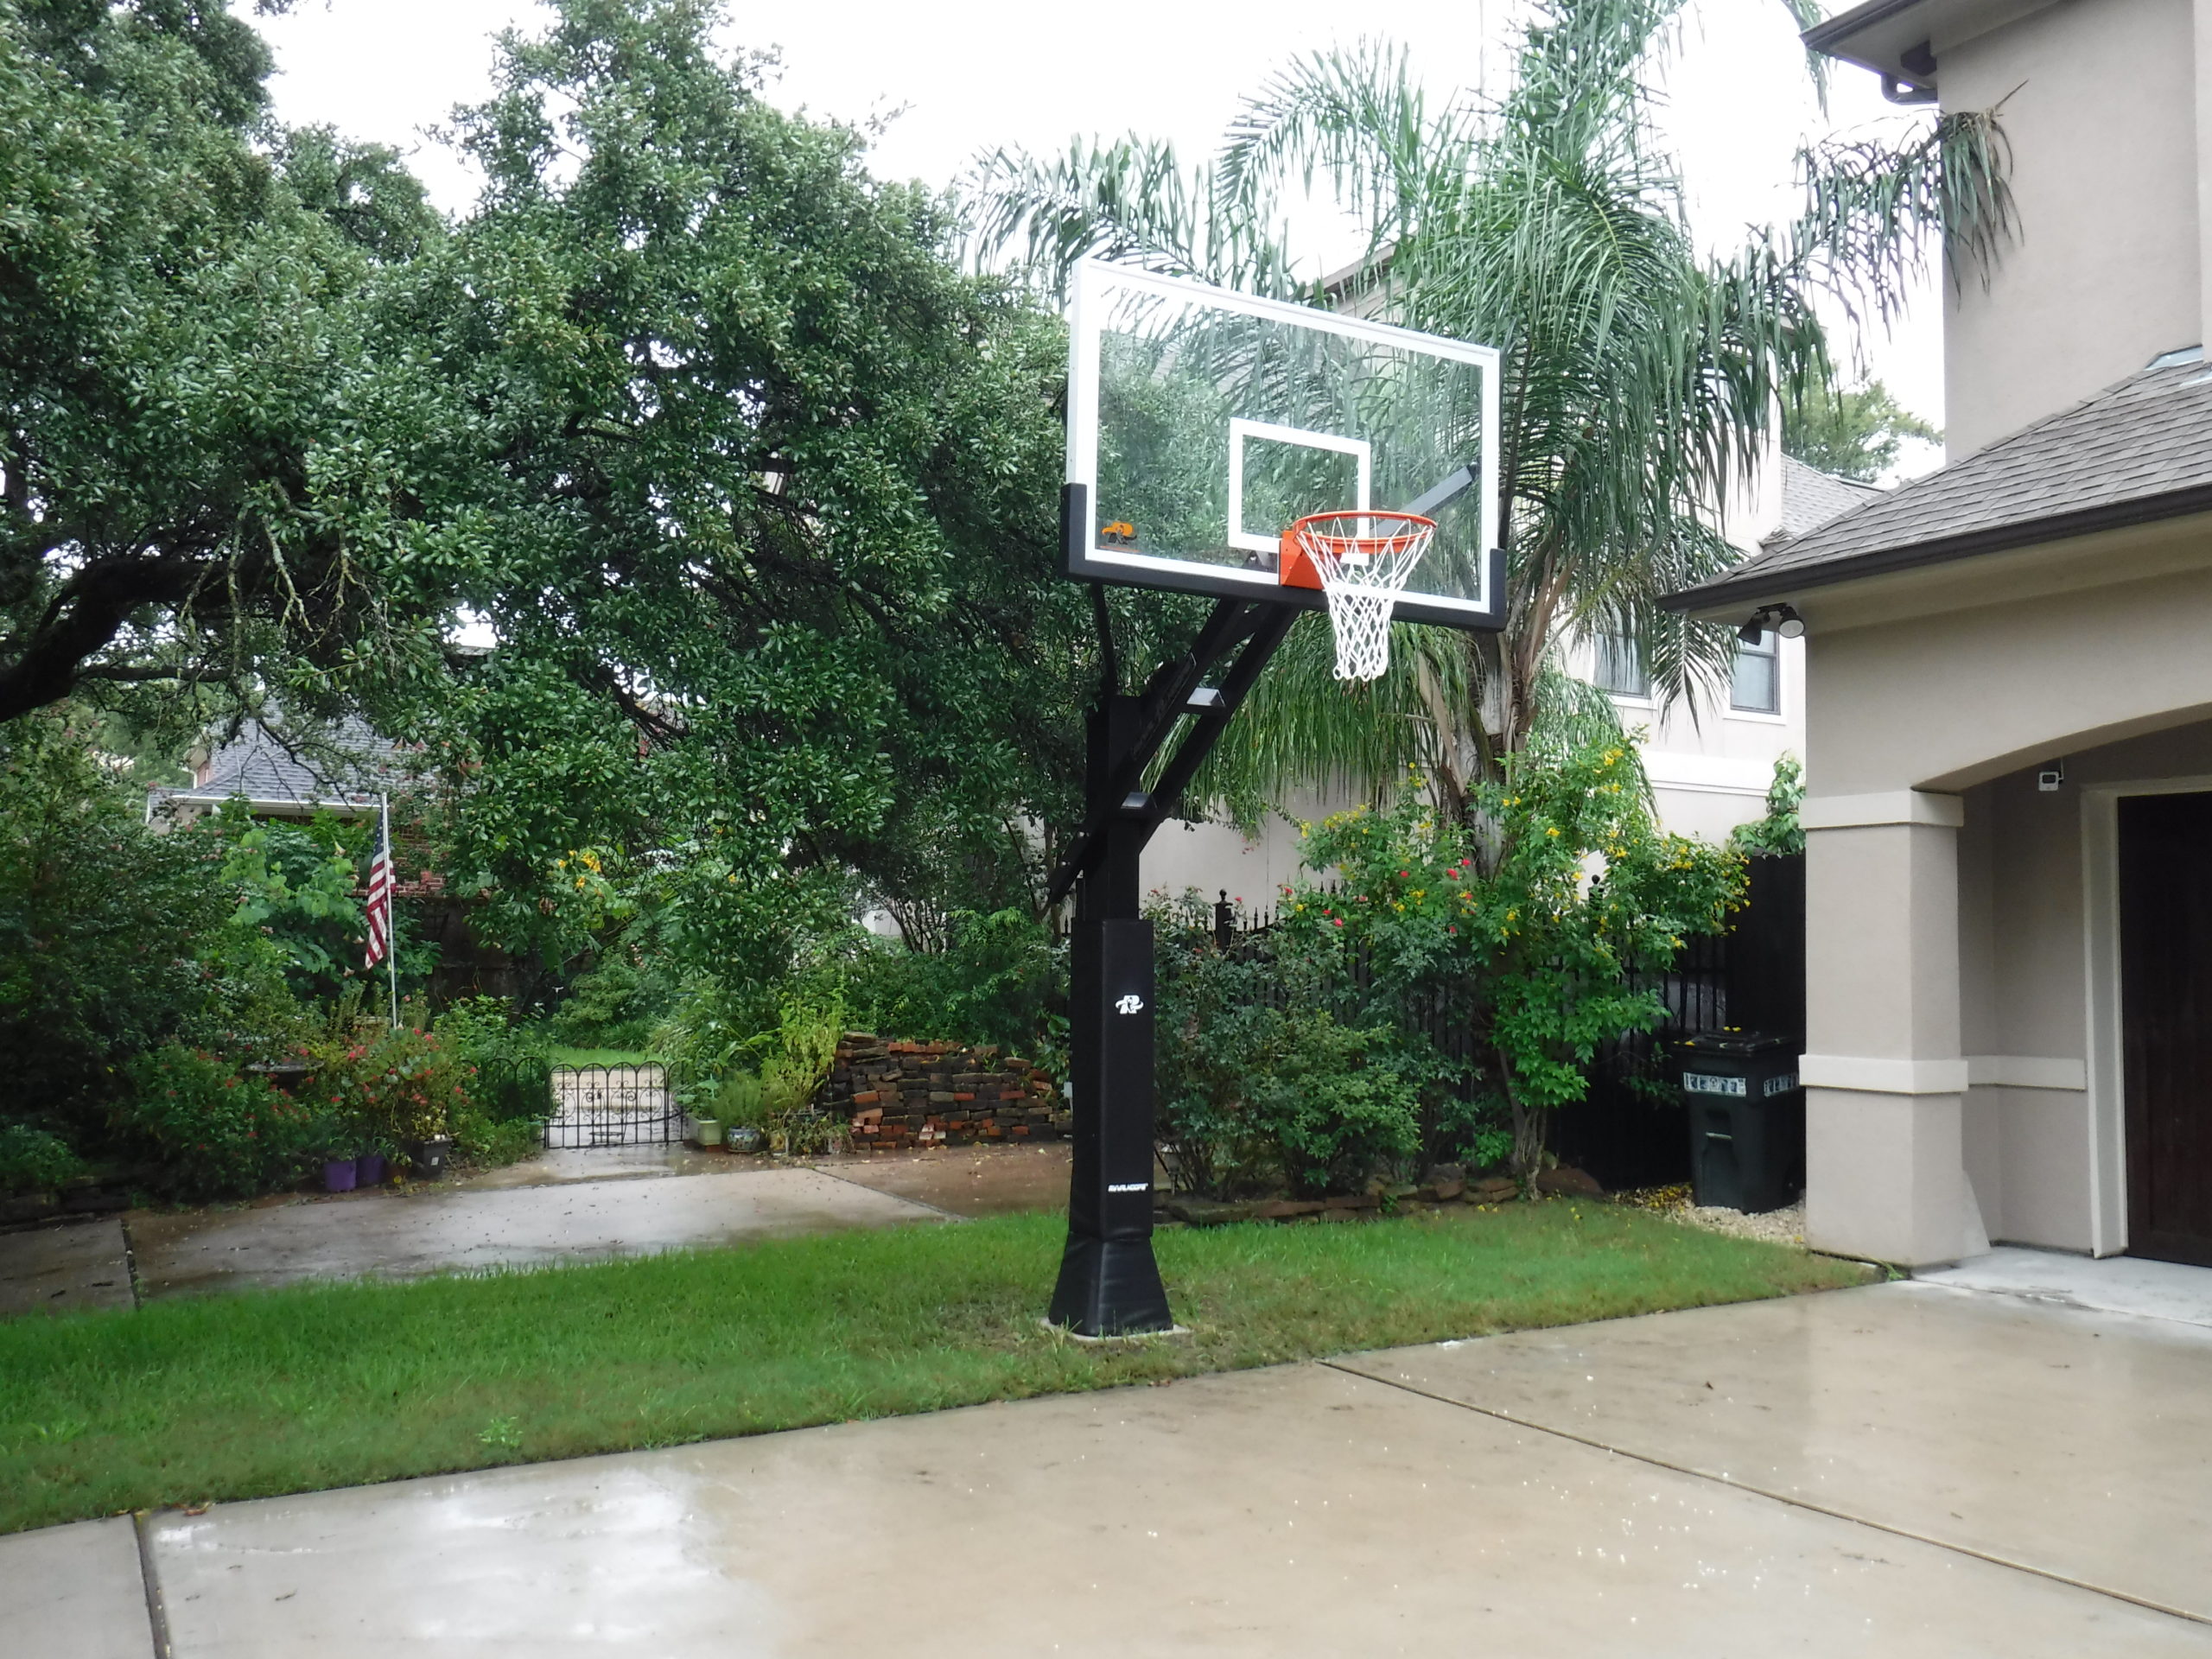 Ryval Hoops Basketball Hoop Install